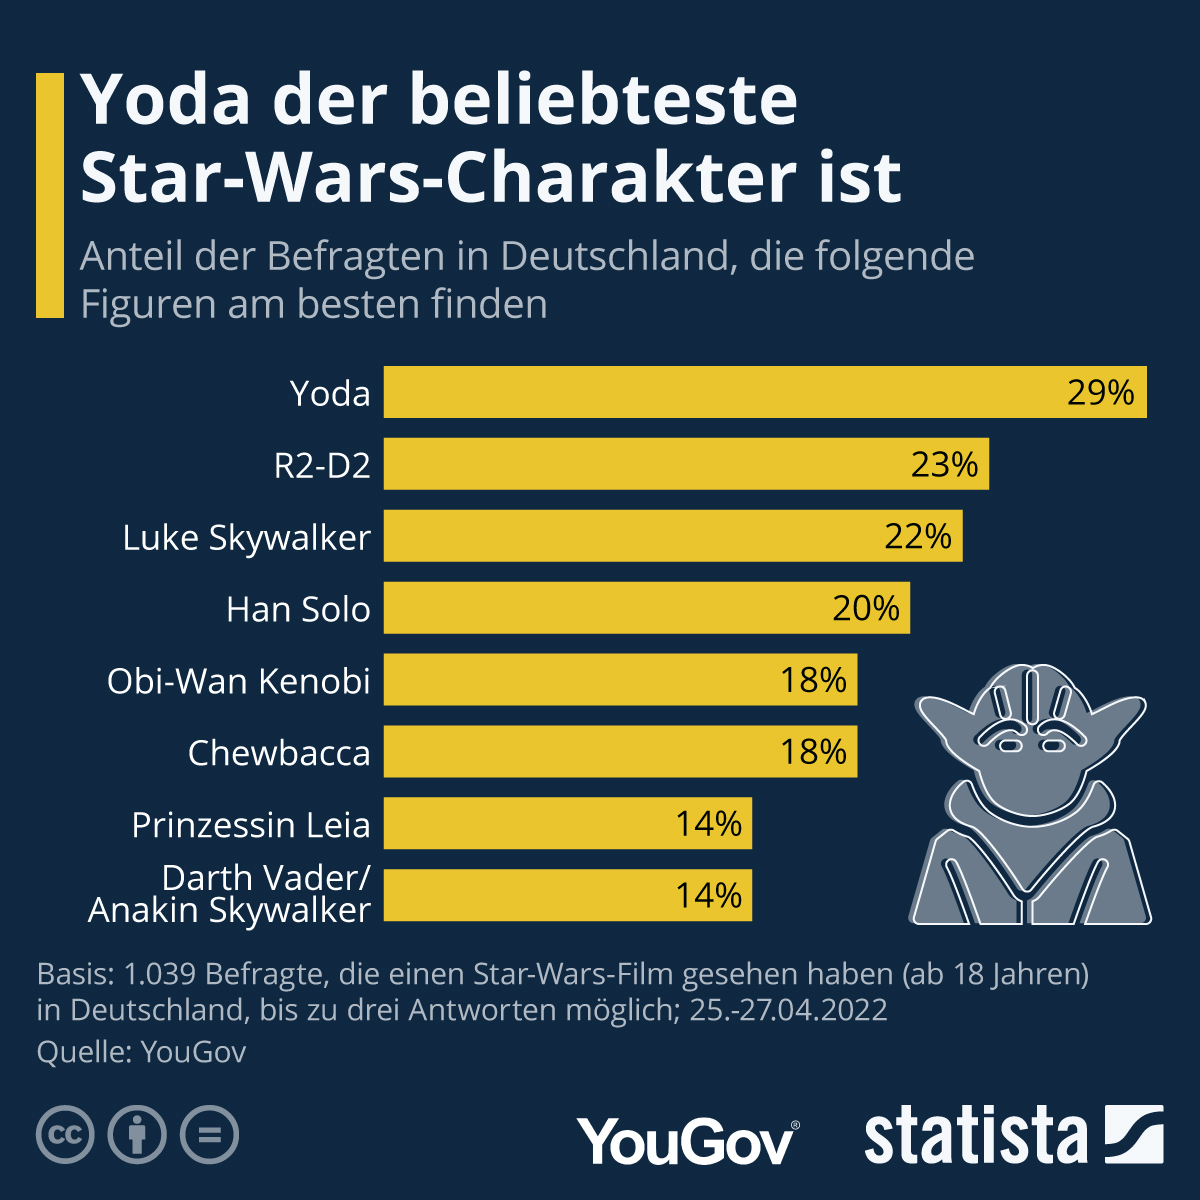 Yoda ist beliebteste Star Wars-Figur